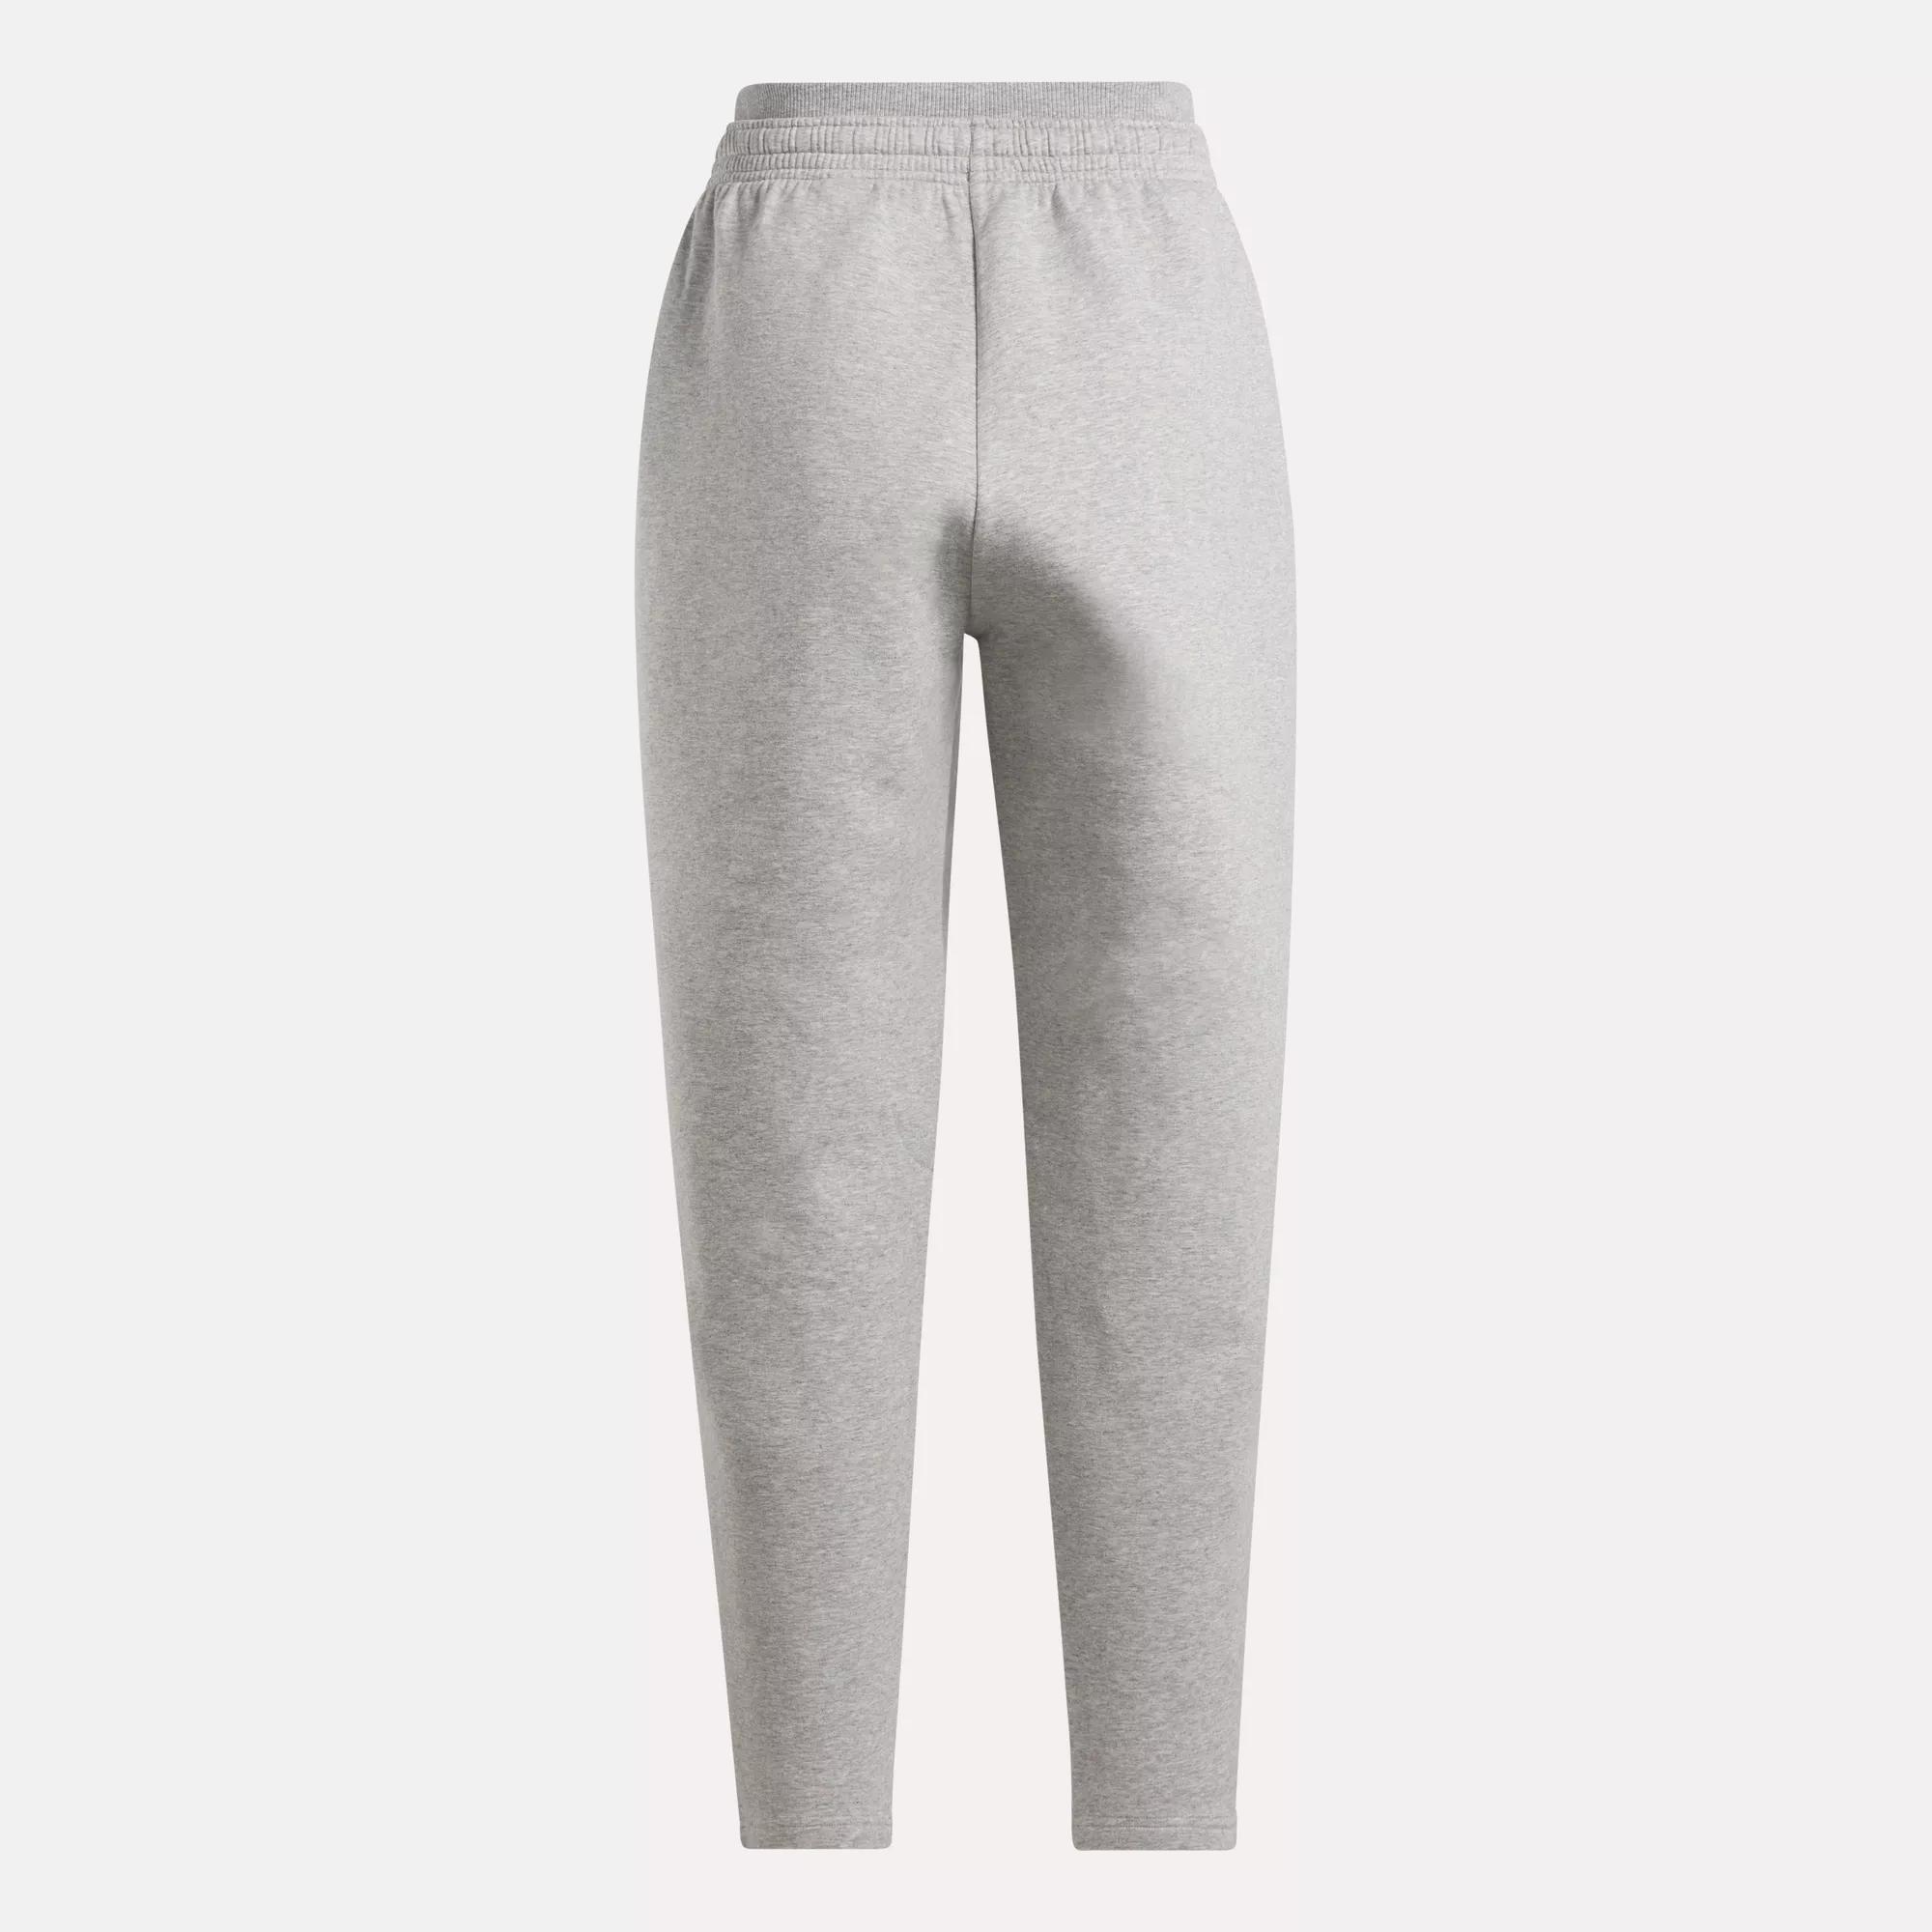 DreamBlend Cotton Knit Pants | eBay